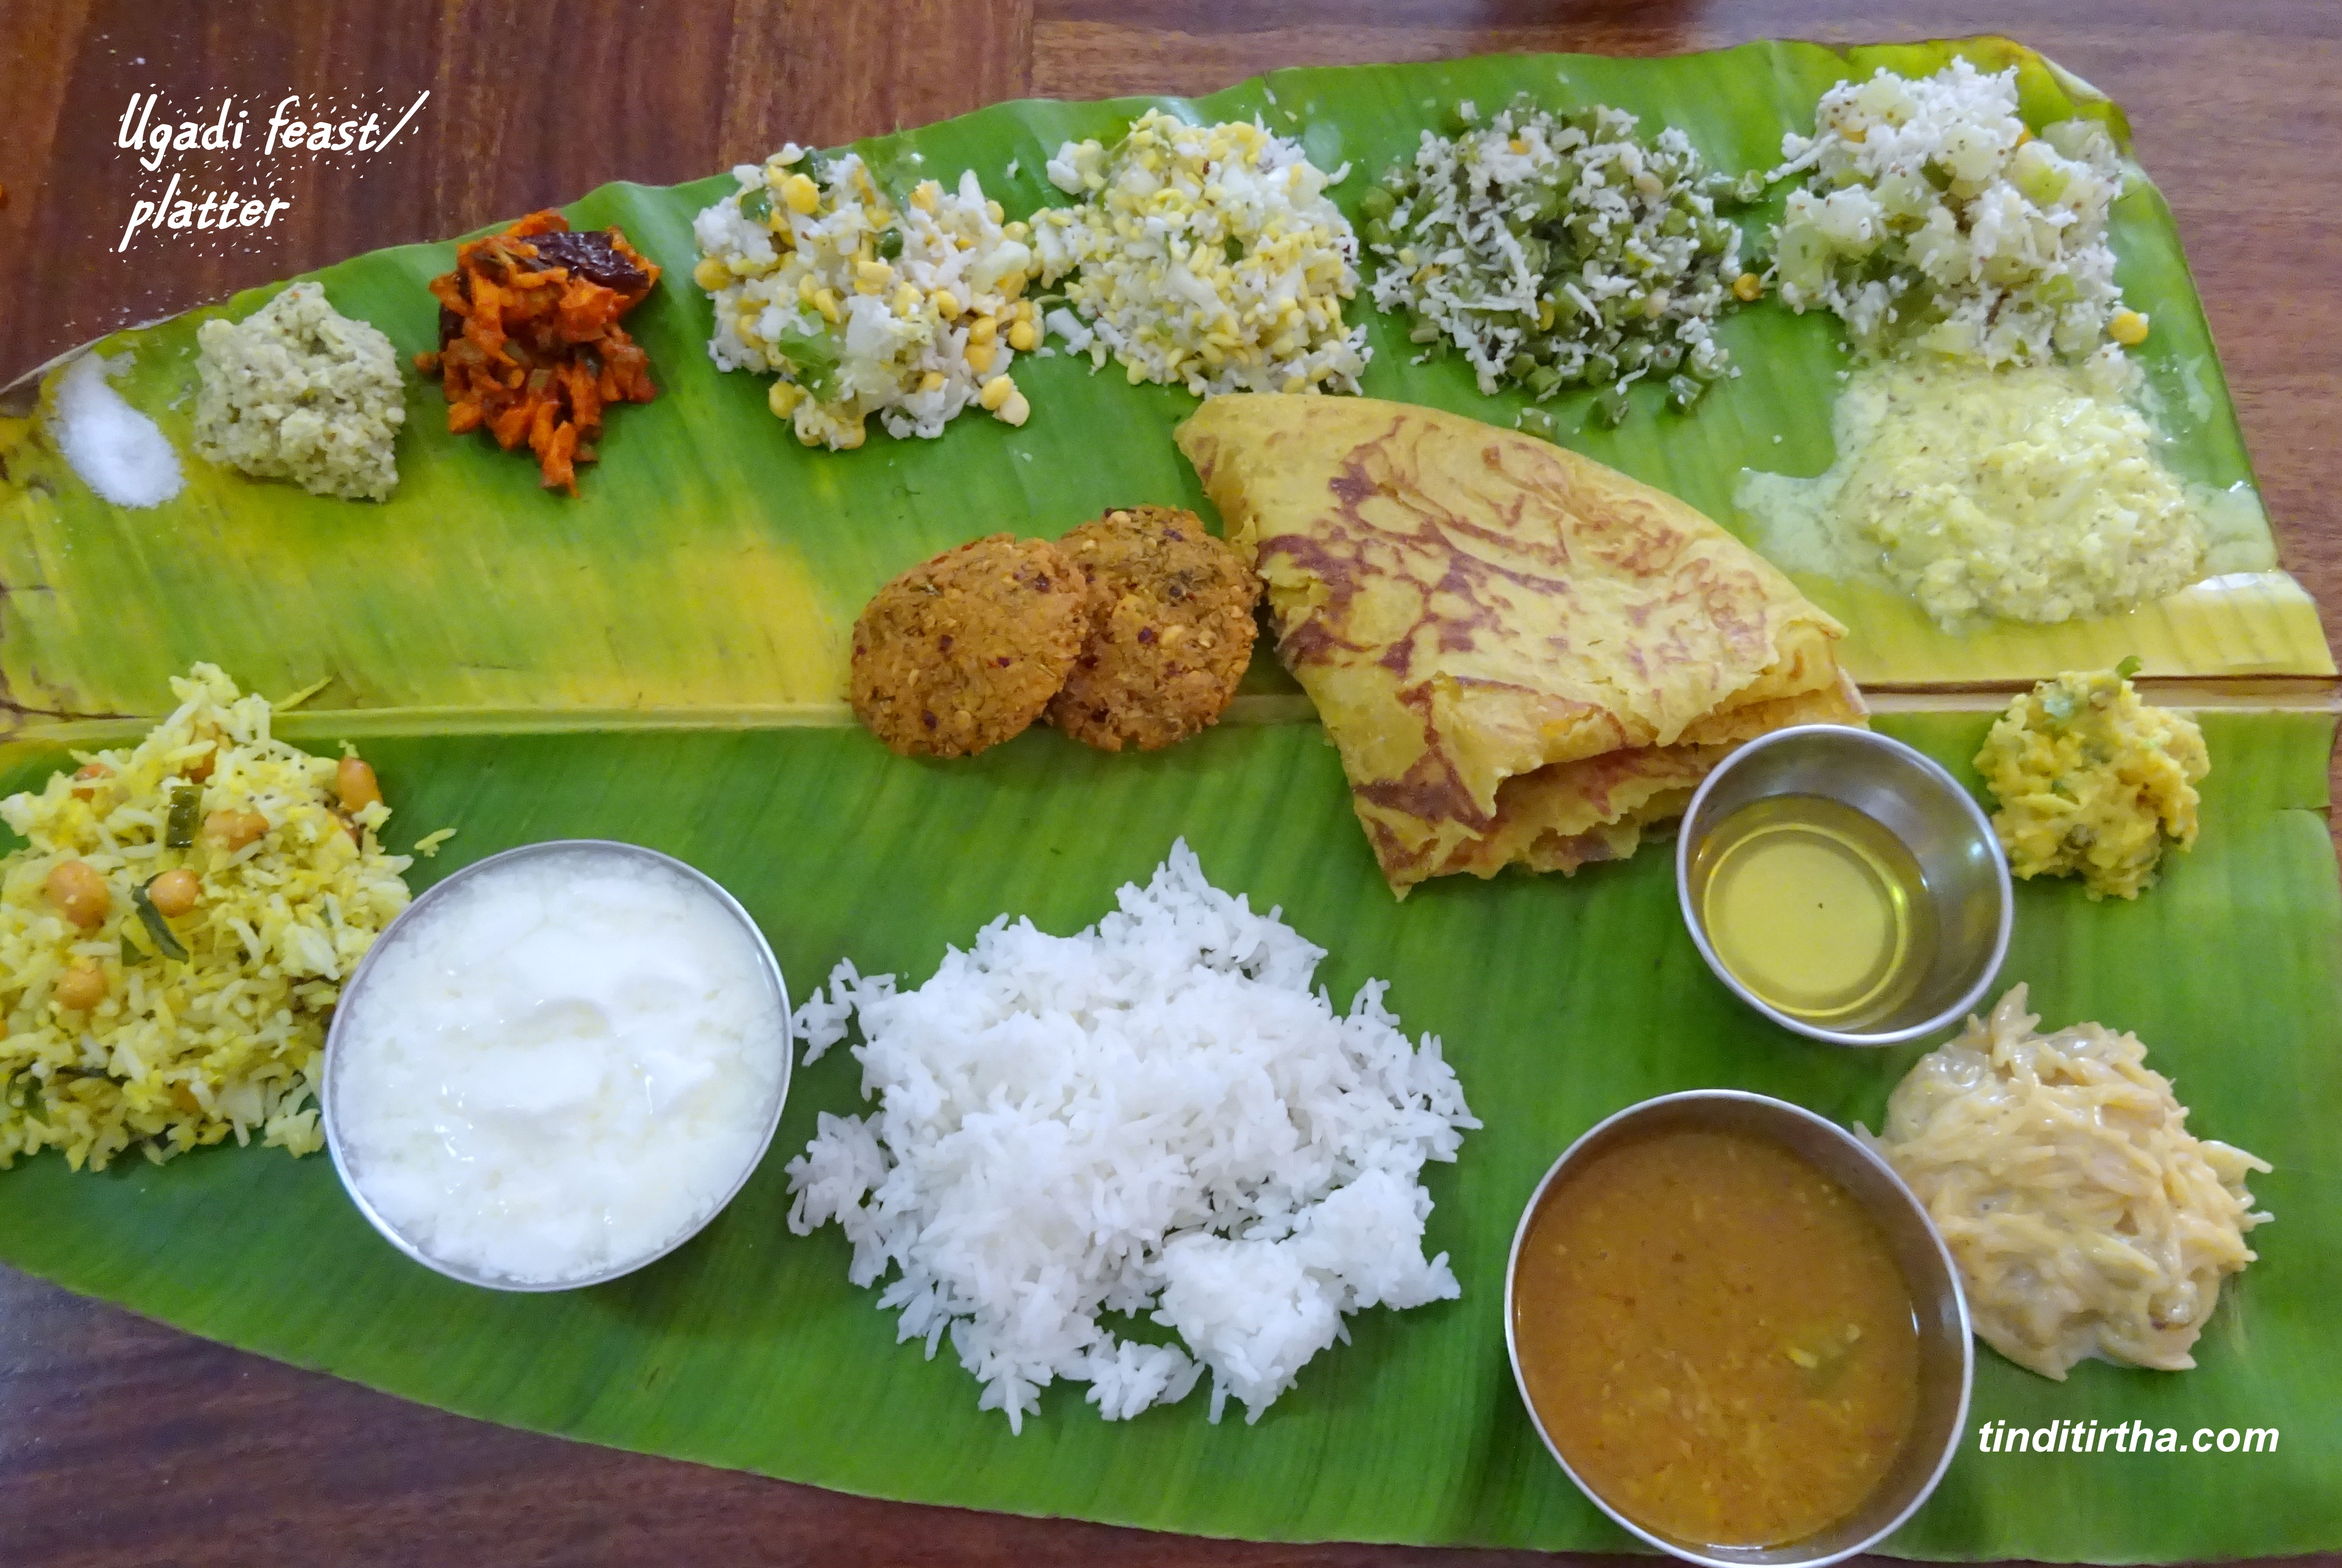 Festival lunch Platter| Ugadi festival Platter